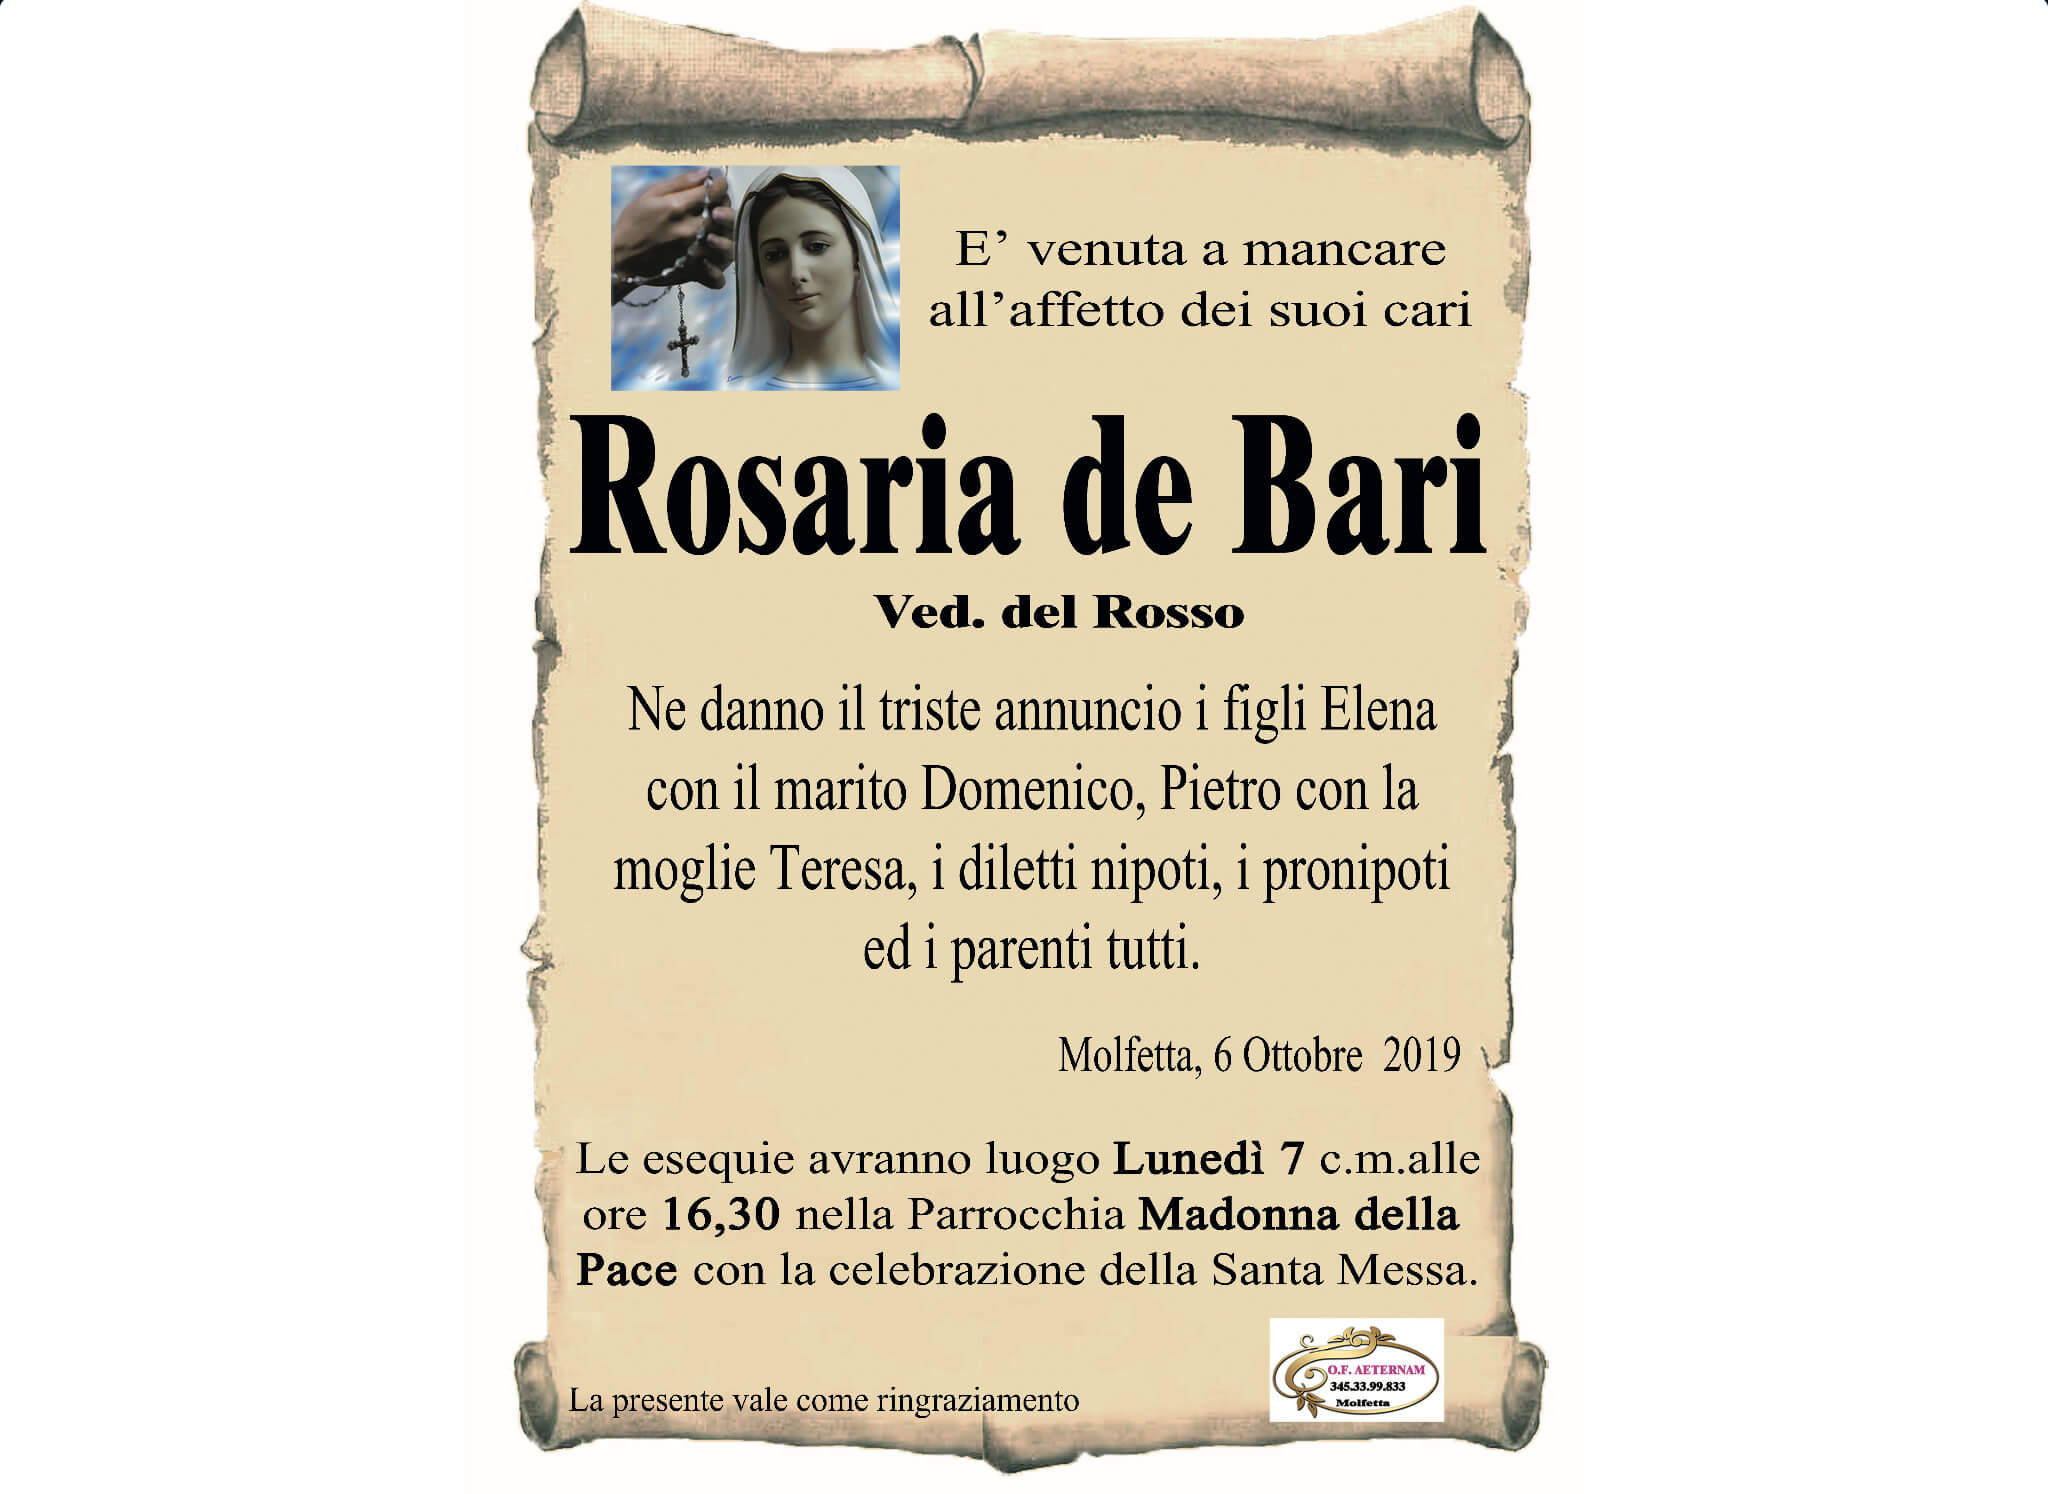 Rosaria de Bari